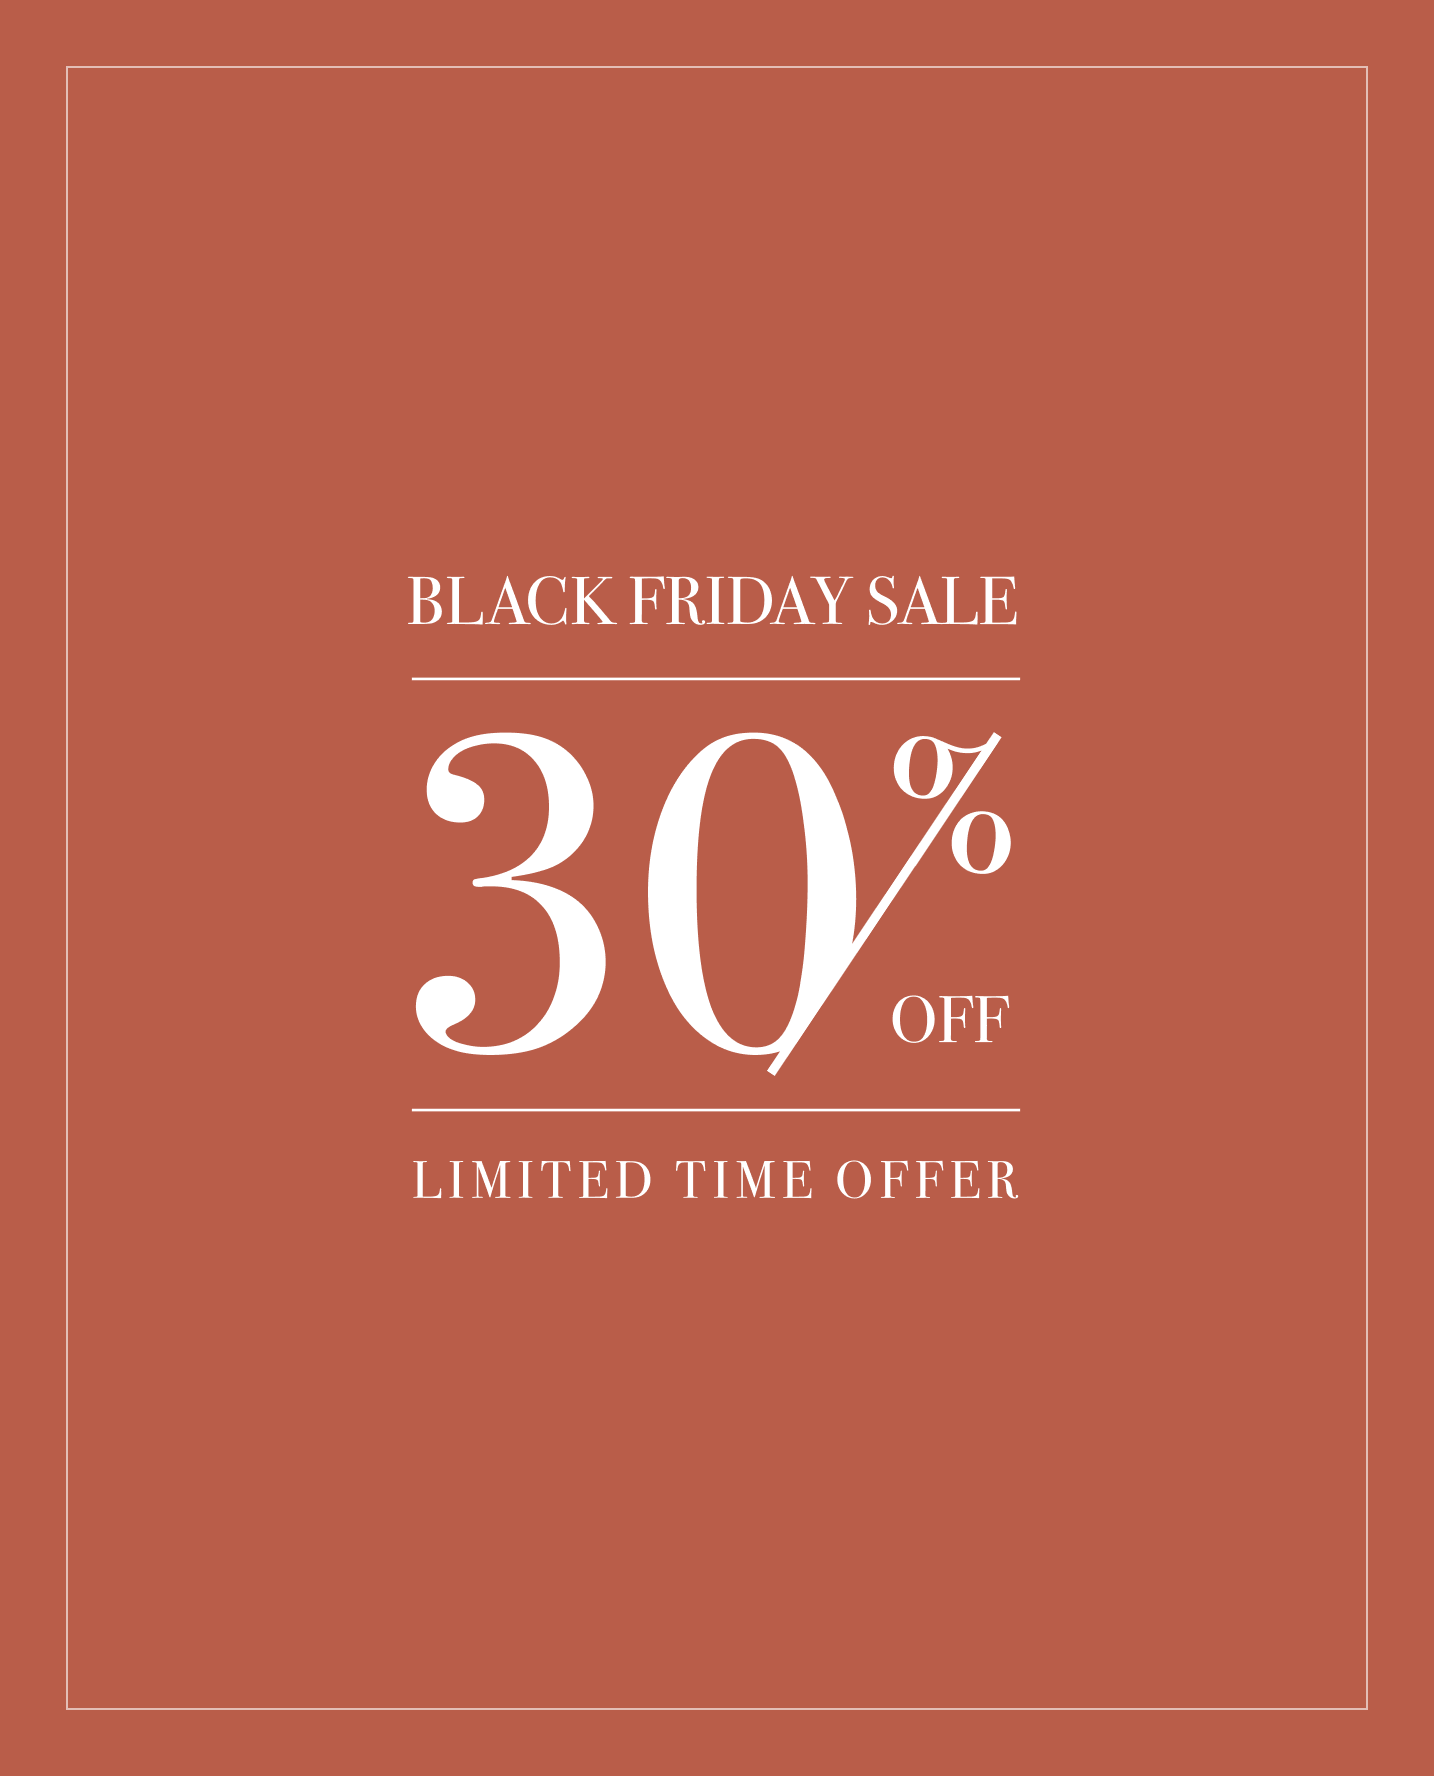 Black Friday Offer - 30% Off